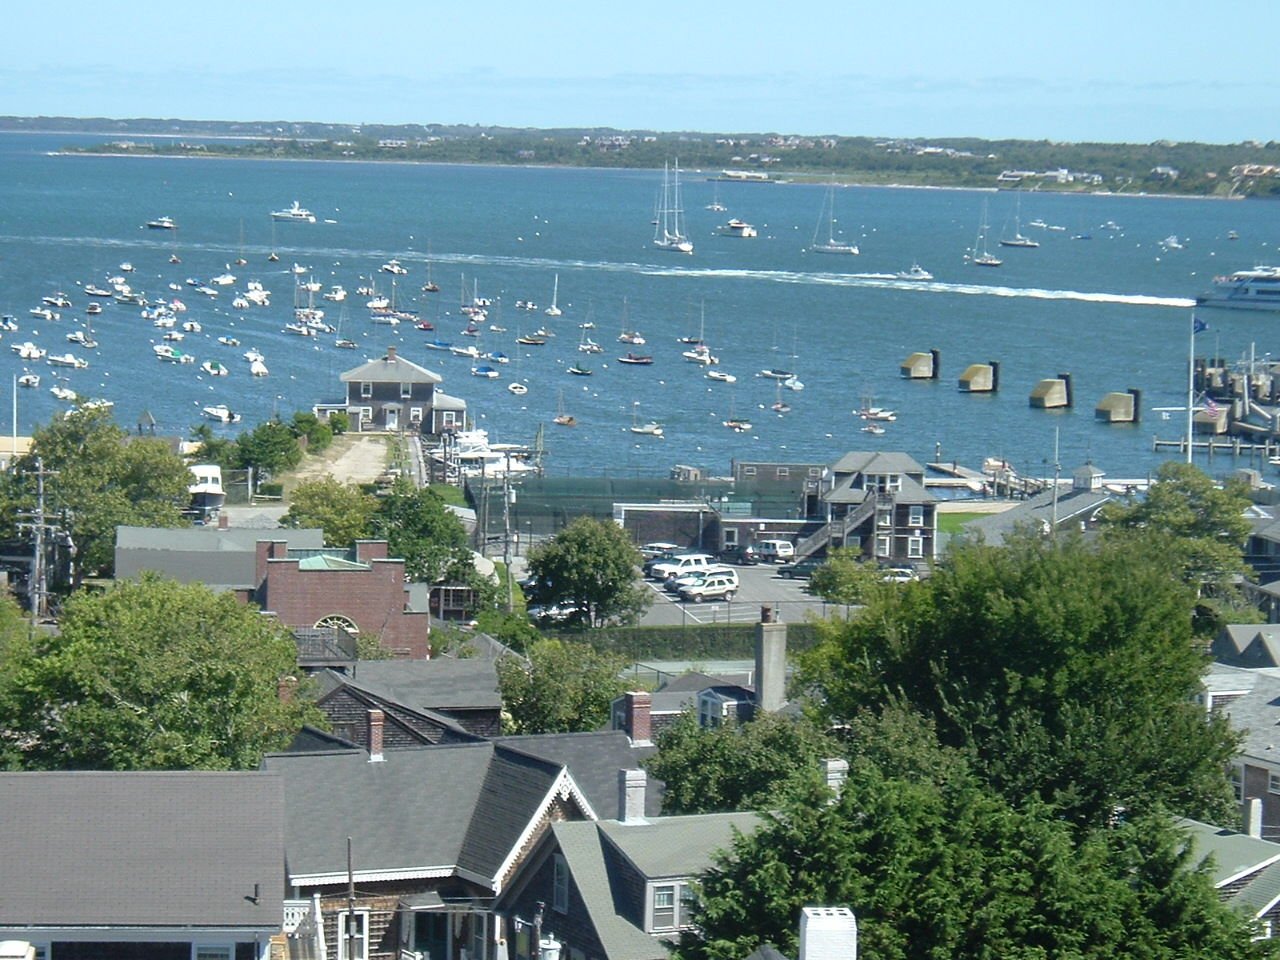 View of Nantucket Harbor